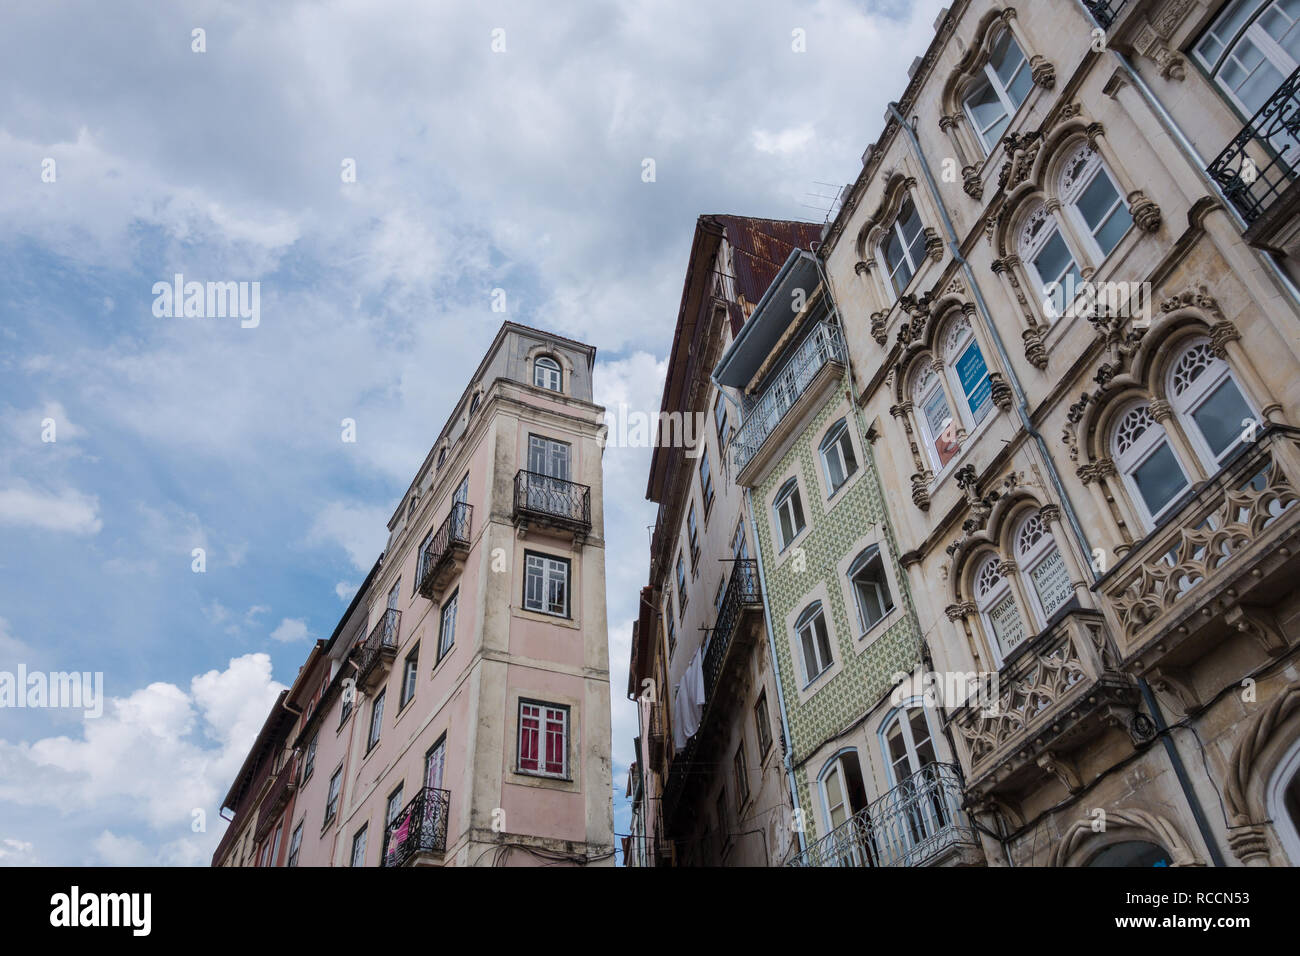 Dettagli di angolo di strada edifici con piastrelle tipiche facciate e le caratteristiche del periodo contro un cielo strutturato in Coimbra Portogallo Foto Stock